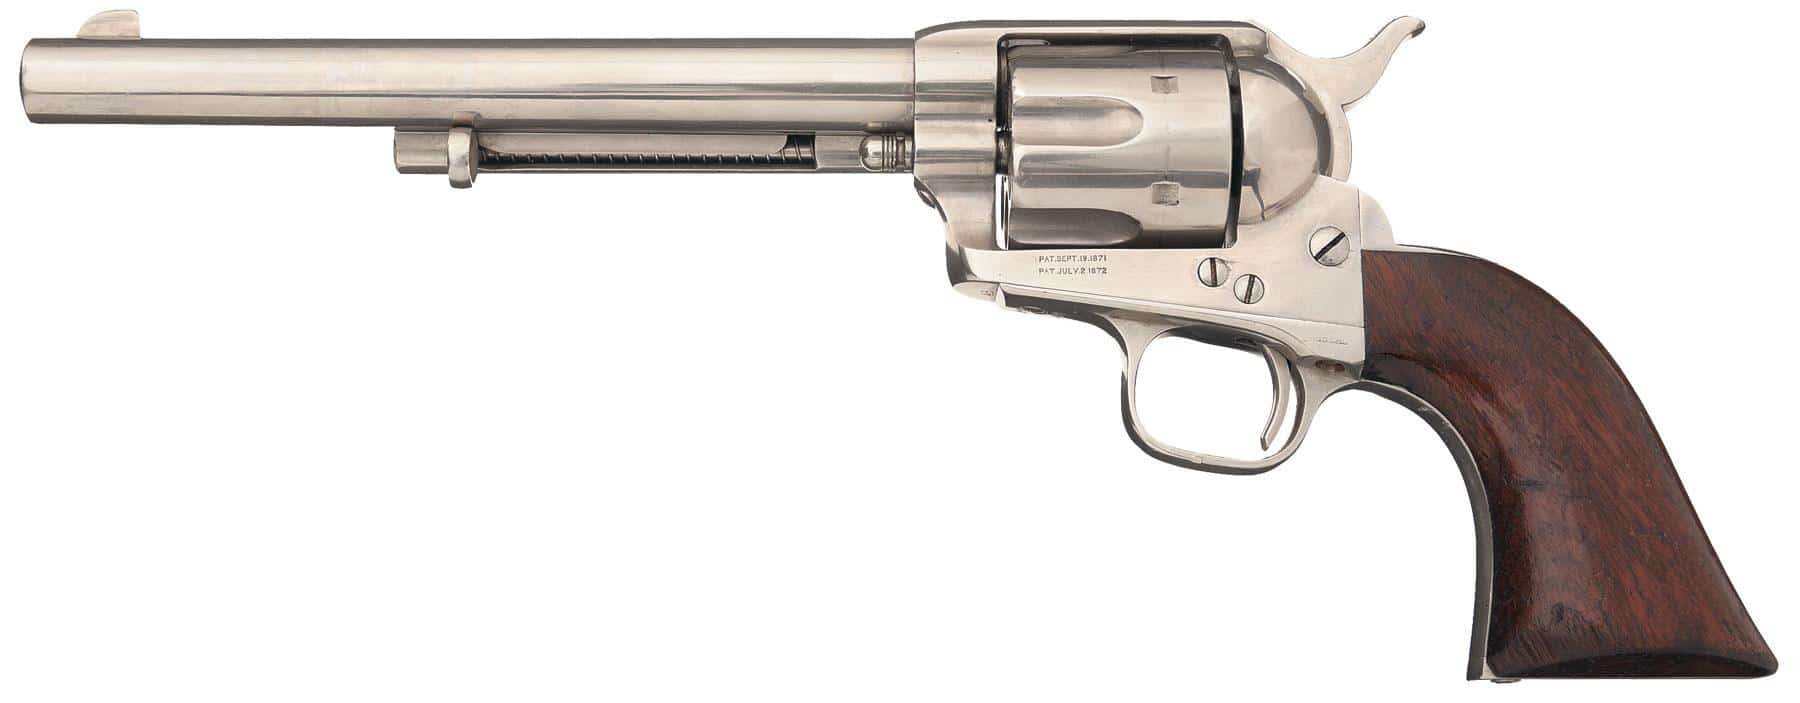 Revolver Colt Single Action Army, fabriqué en juillet 1873 © Rock Island Auction